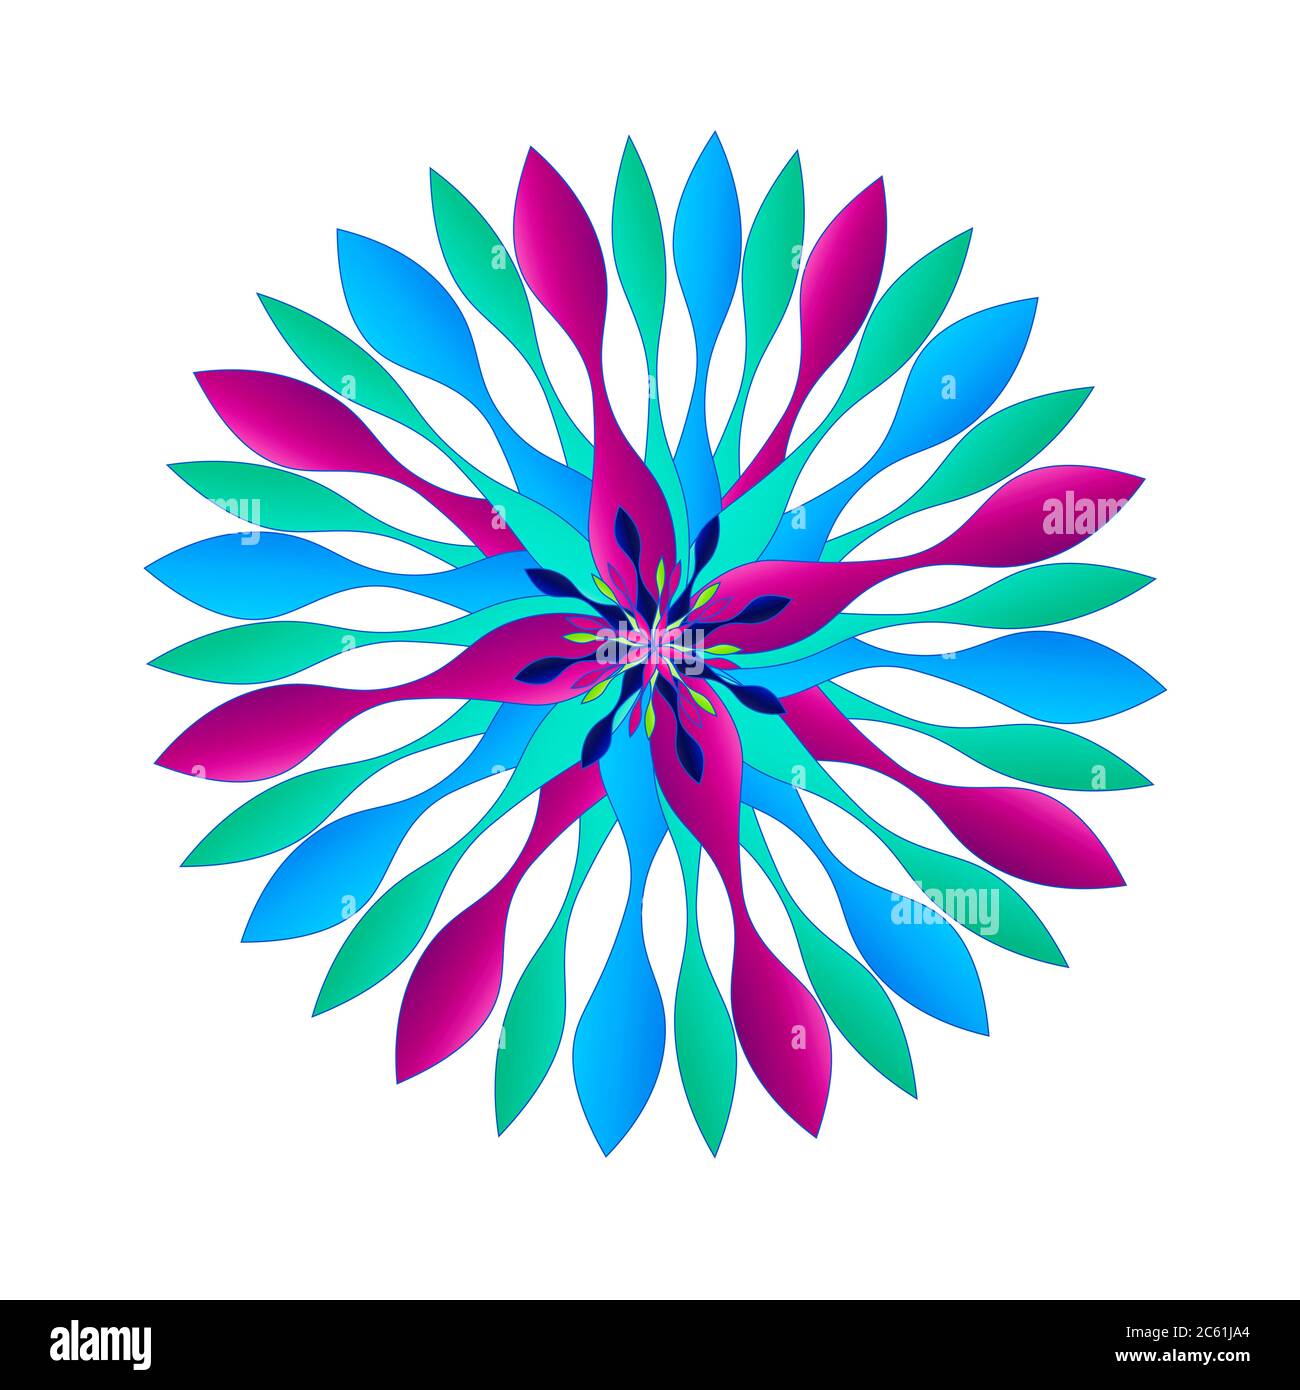 Superbes motifs graphiques de style spinner dans un jeu unique de couleurs vives, dont le violet, l'aqua teal et le bleu. Certains avec des frontières. Banque D'Images